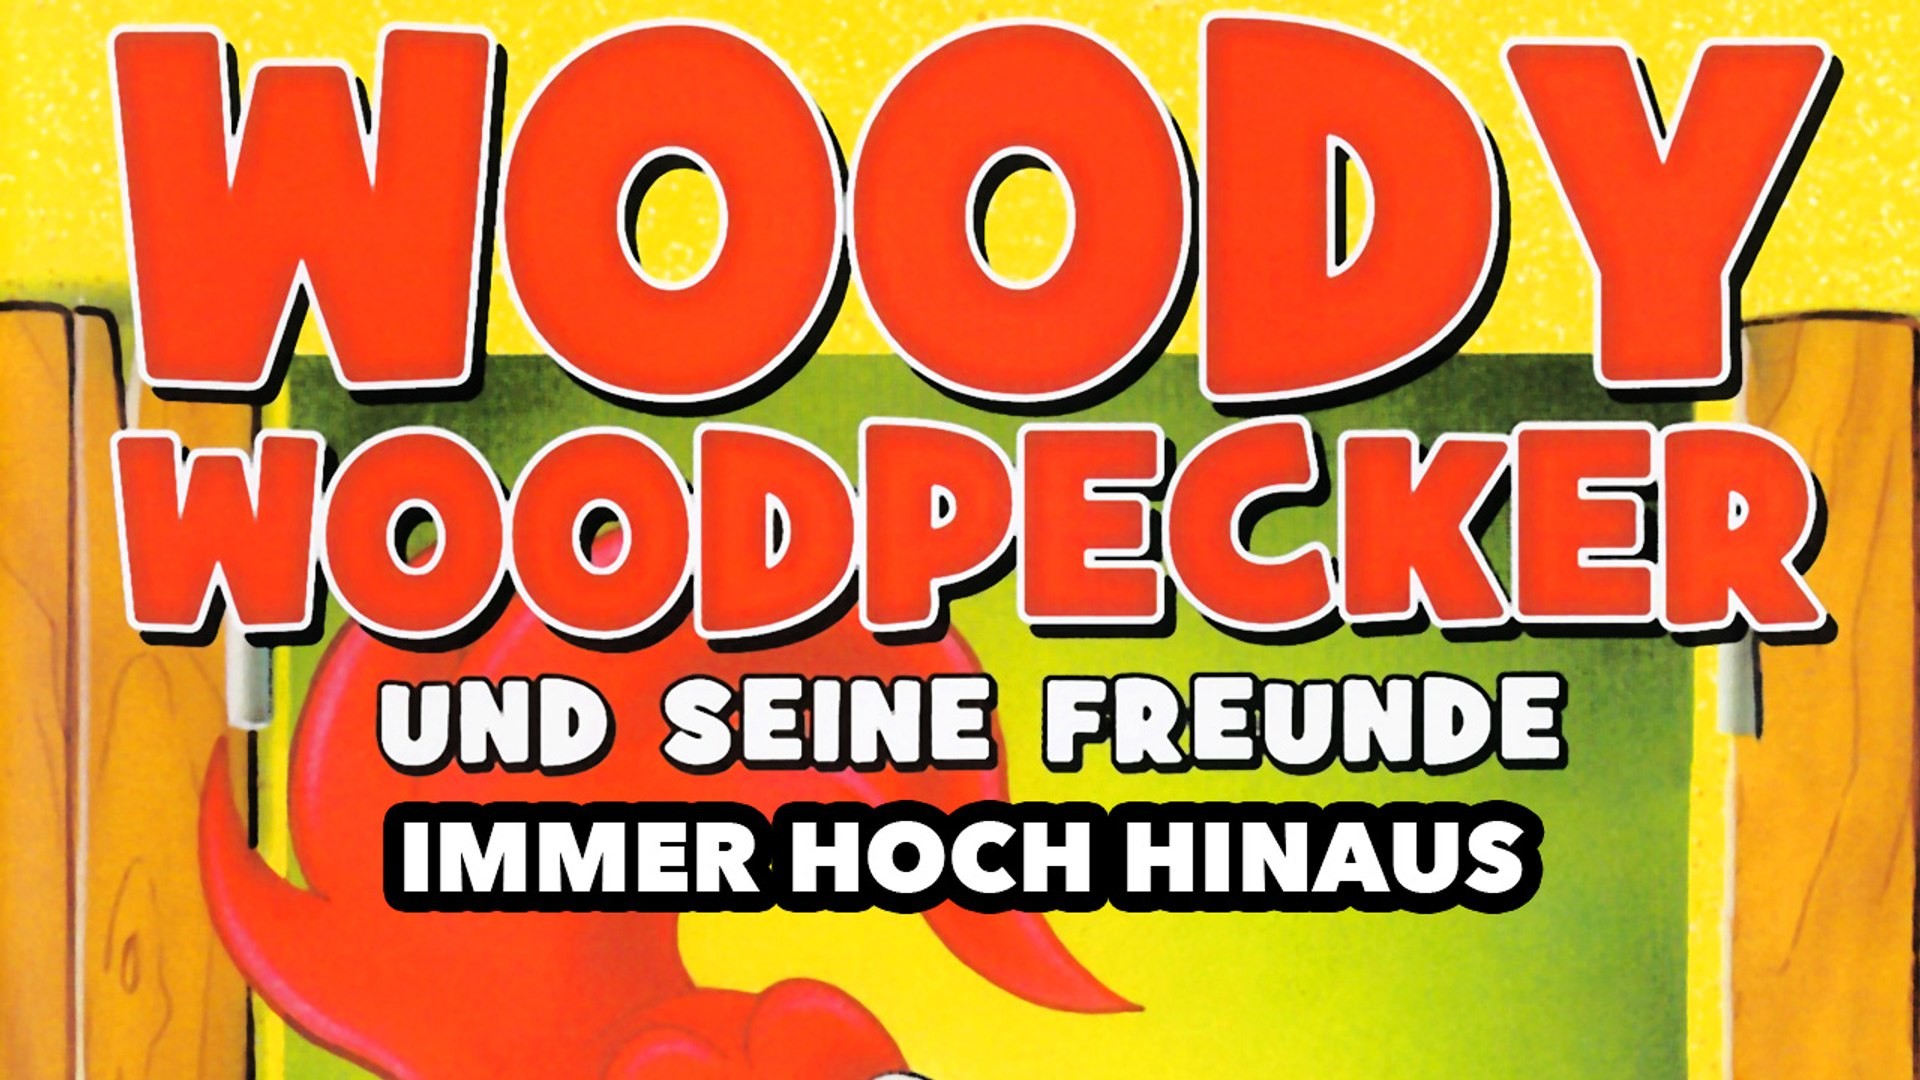 1920x1080 Woody Woodpecker - Immer hoch hinaus (1971) [Zeichentrick] | Film (deutsch)  - video dailymotion